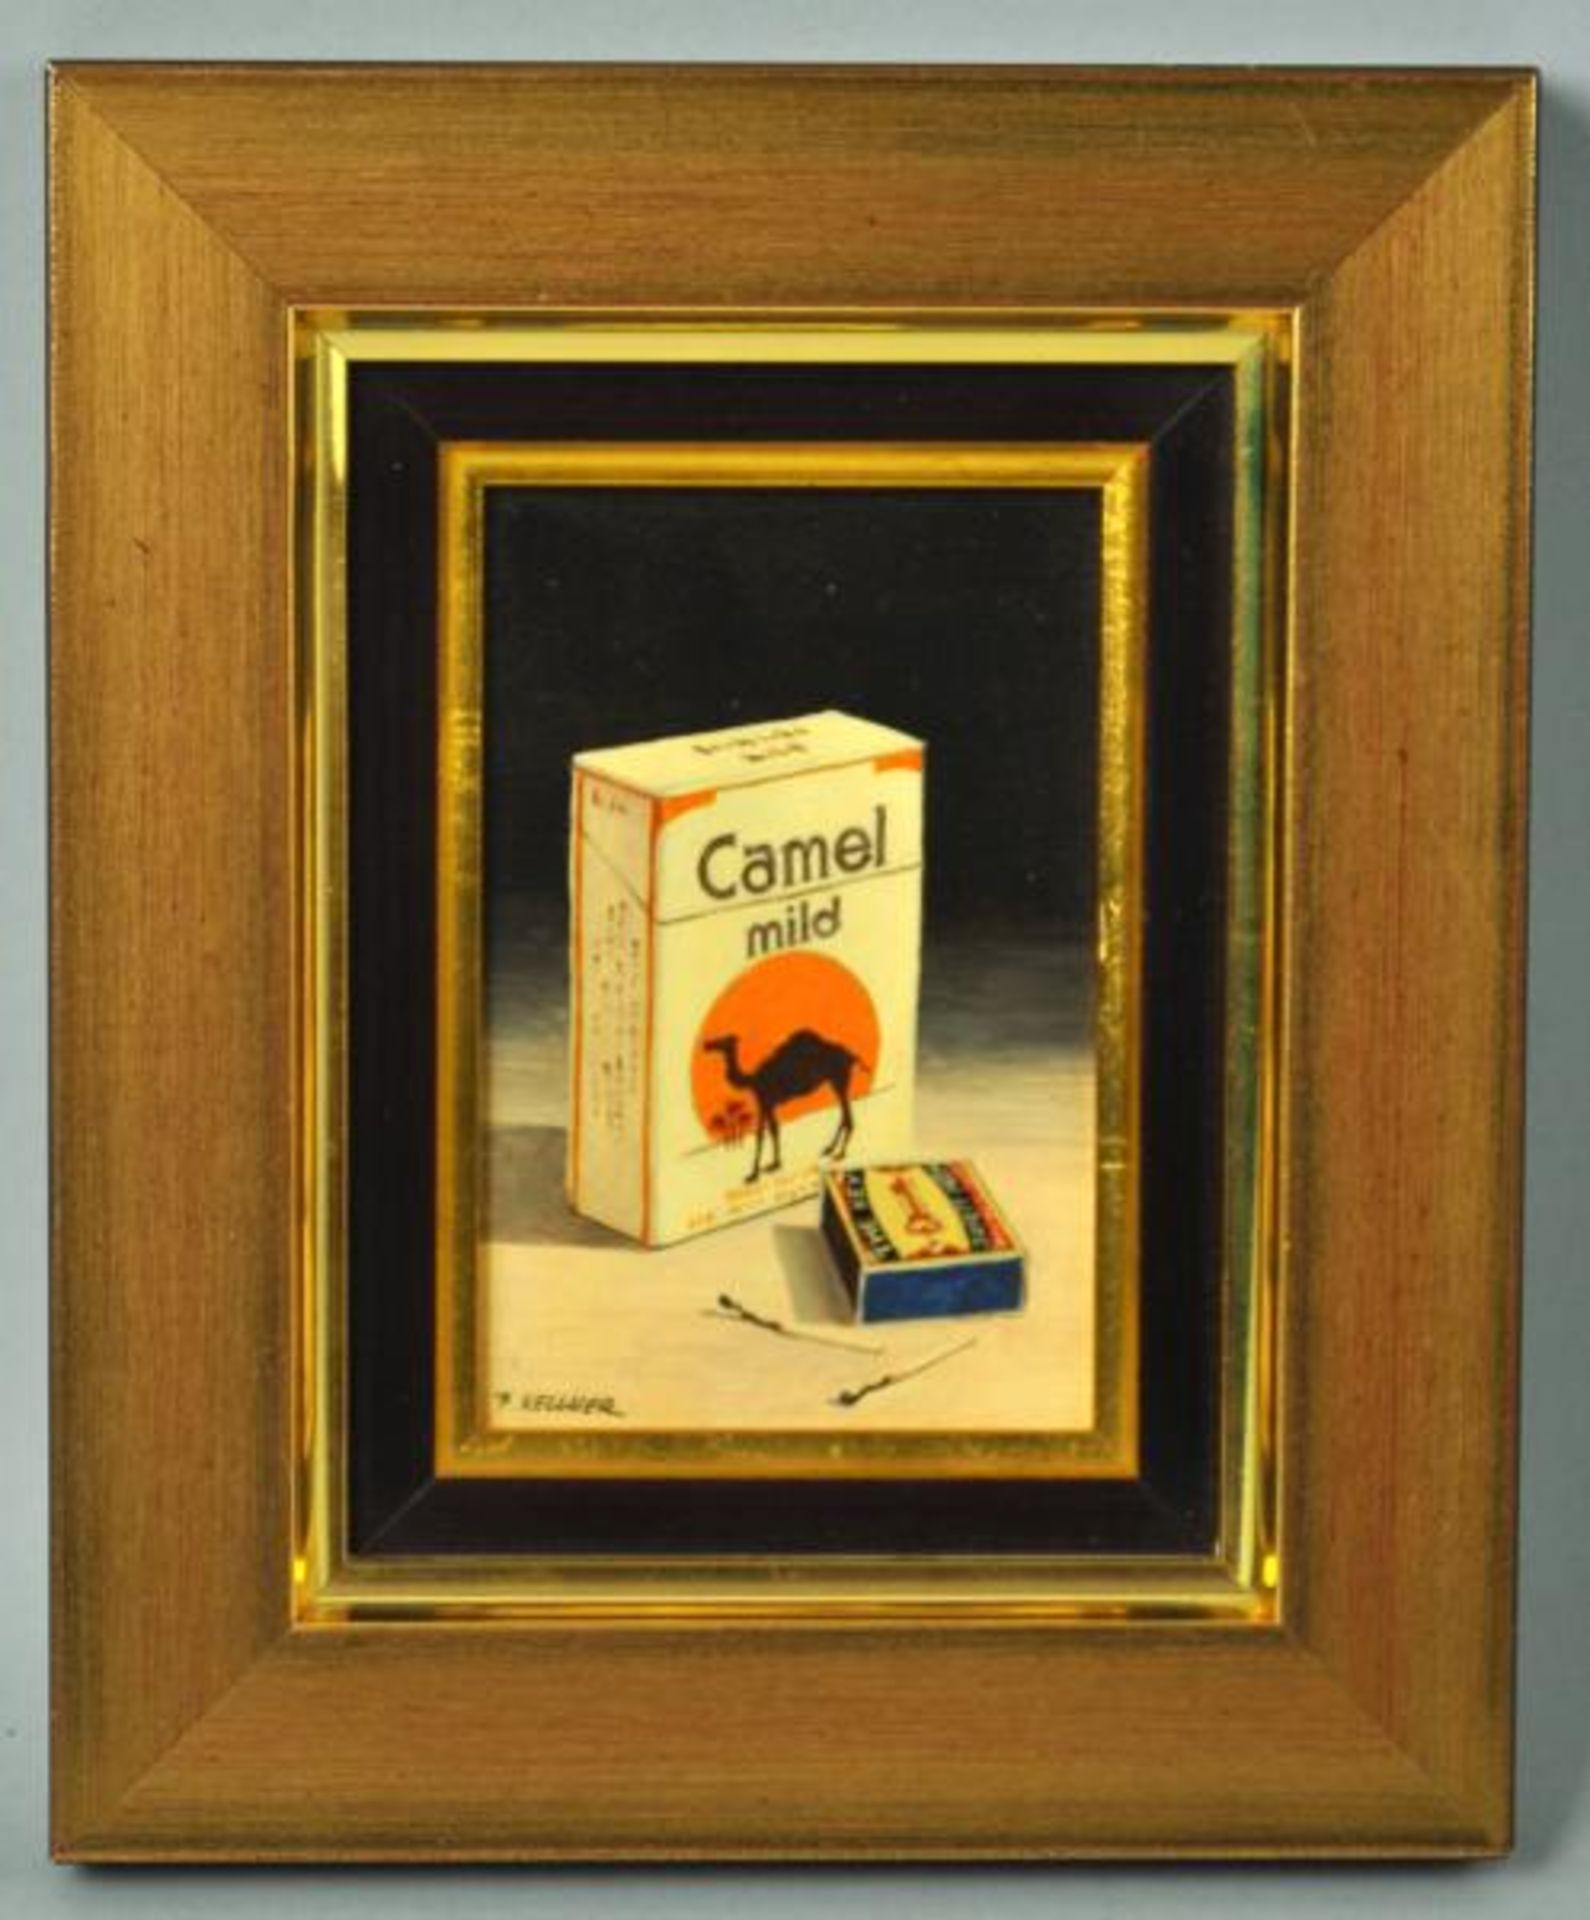 KELLNER Karel (Tschechien 2.Hälfte 20.Jh.) "Camel" Zigaretten , 2 Miniaturgemälde, Öl auf Holz, - Bild 3 aus 5